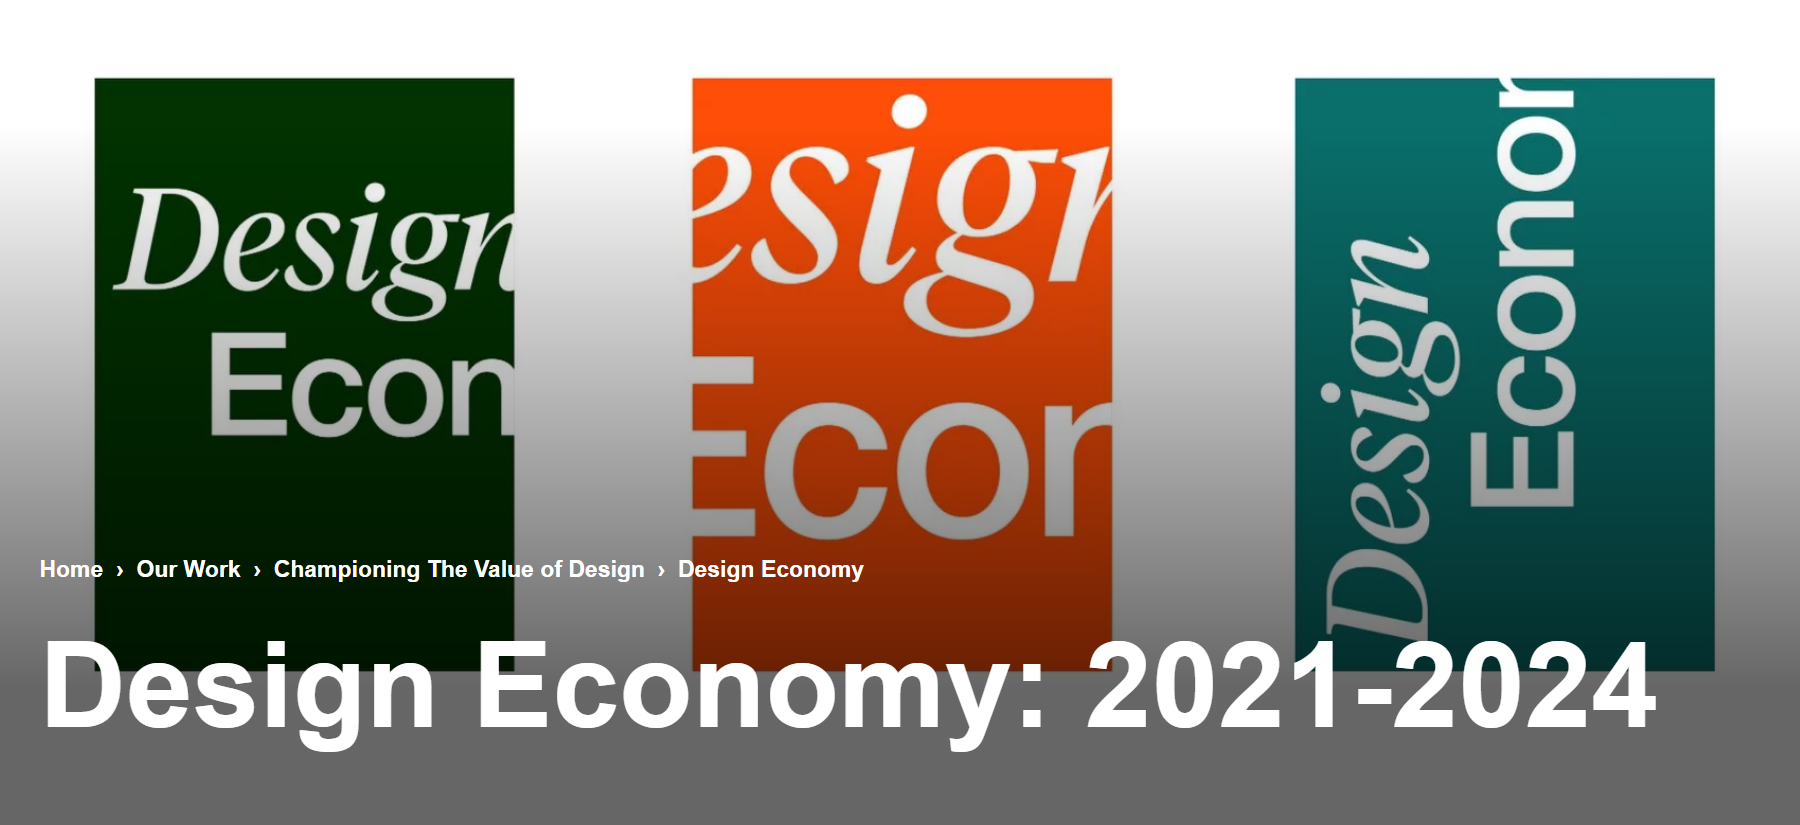 영국디자인의 현재와 미래 가치 측정하는 종합연구 'Design Economy 2021-2024'